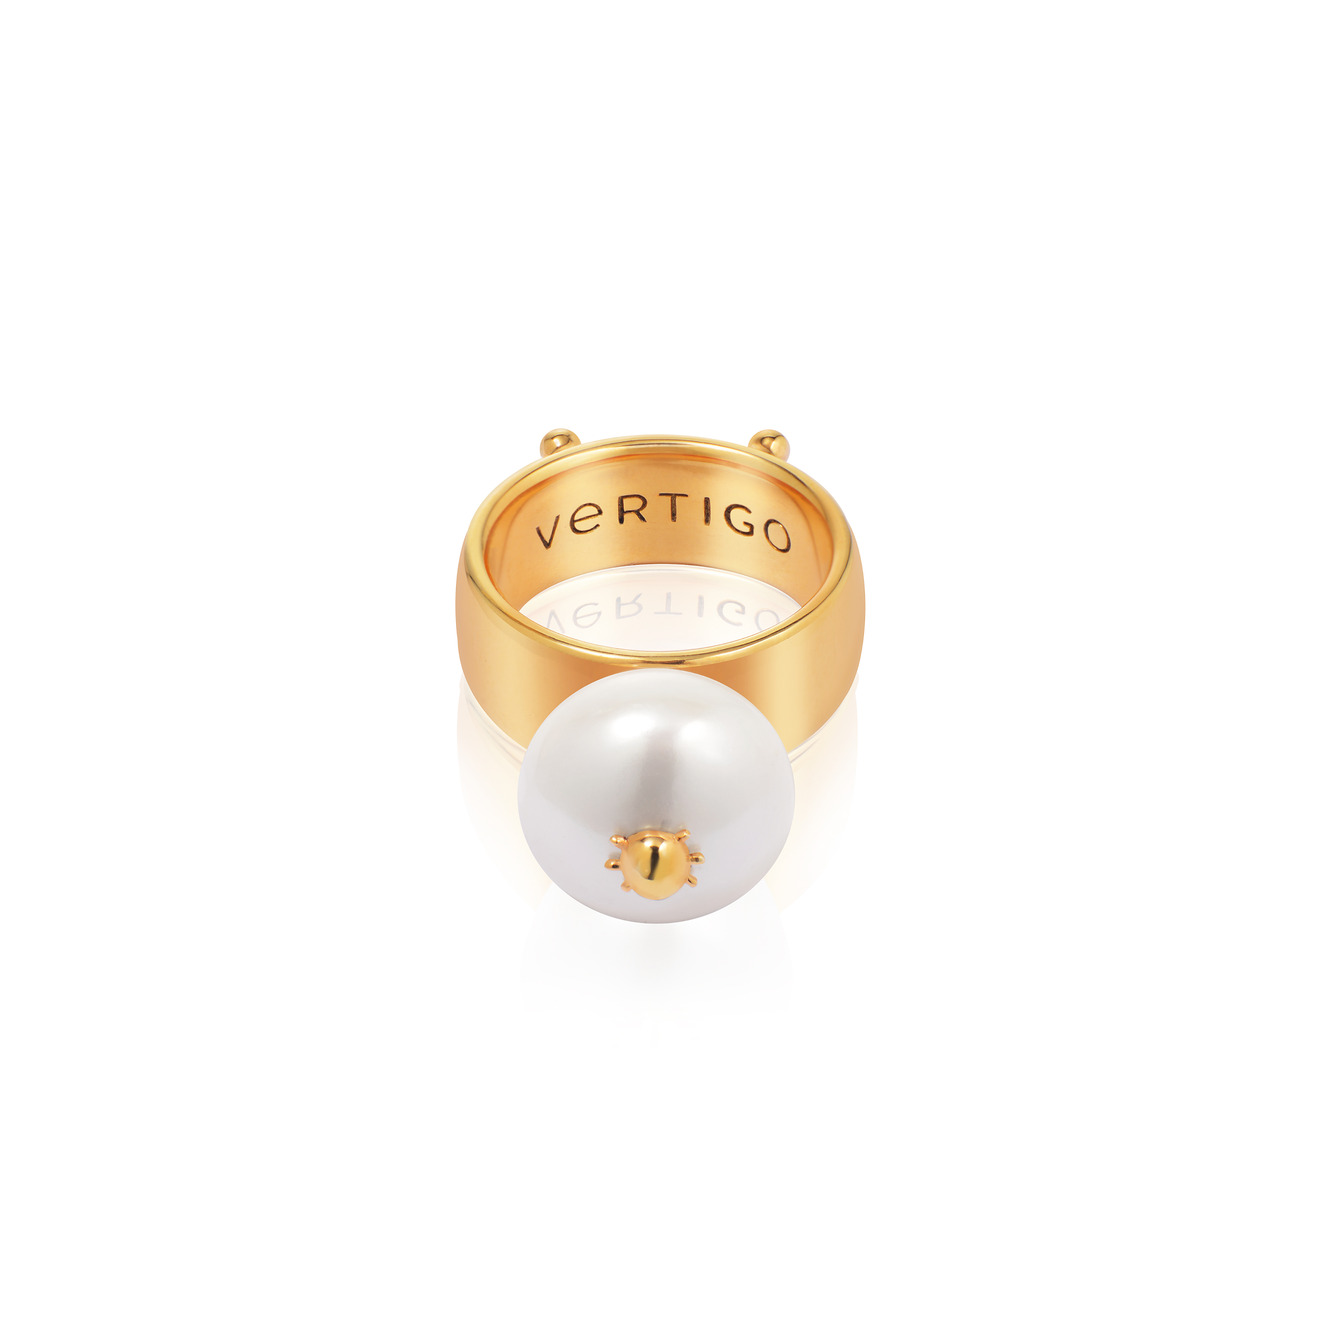 Vertigo Jewellery Lab Позолоченное кольцо СLEOPTR LADYBUG RING из серебра с речным жемчугом vertigo jewellery lab кольцо сleoptr из серебра